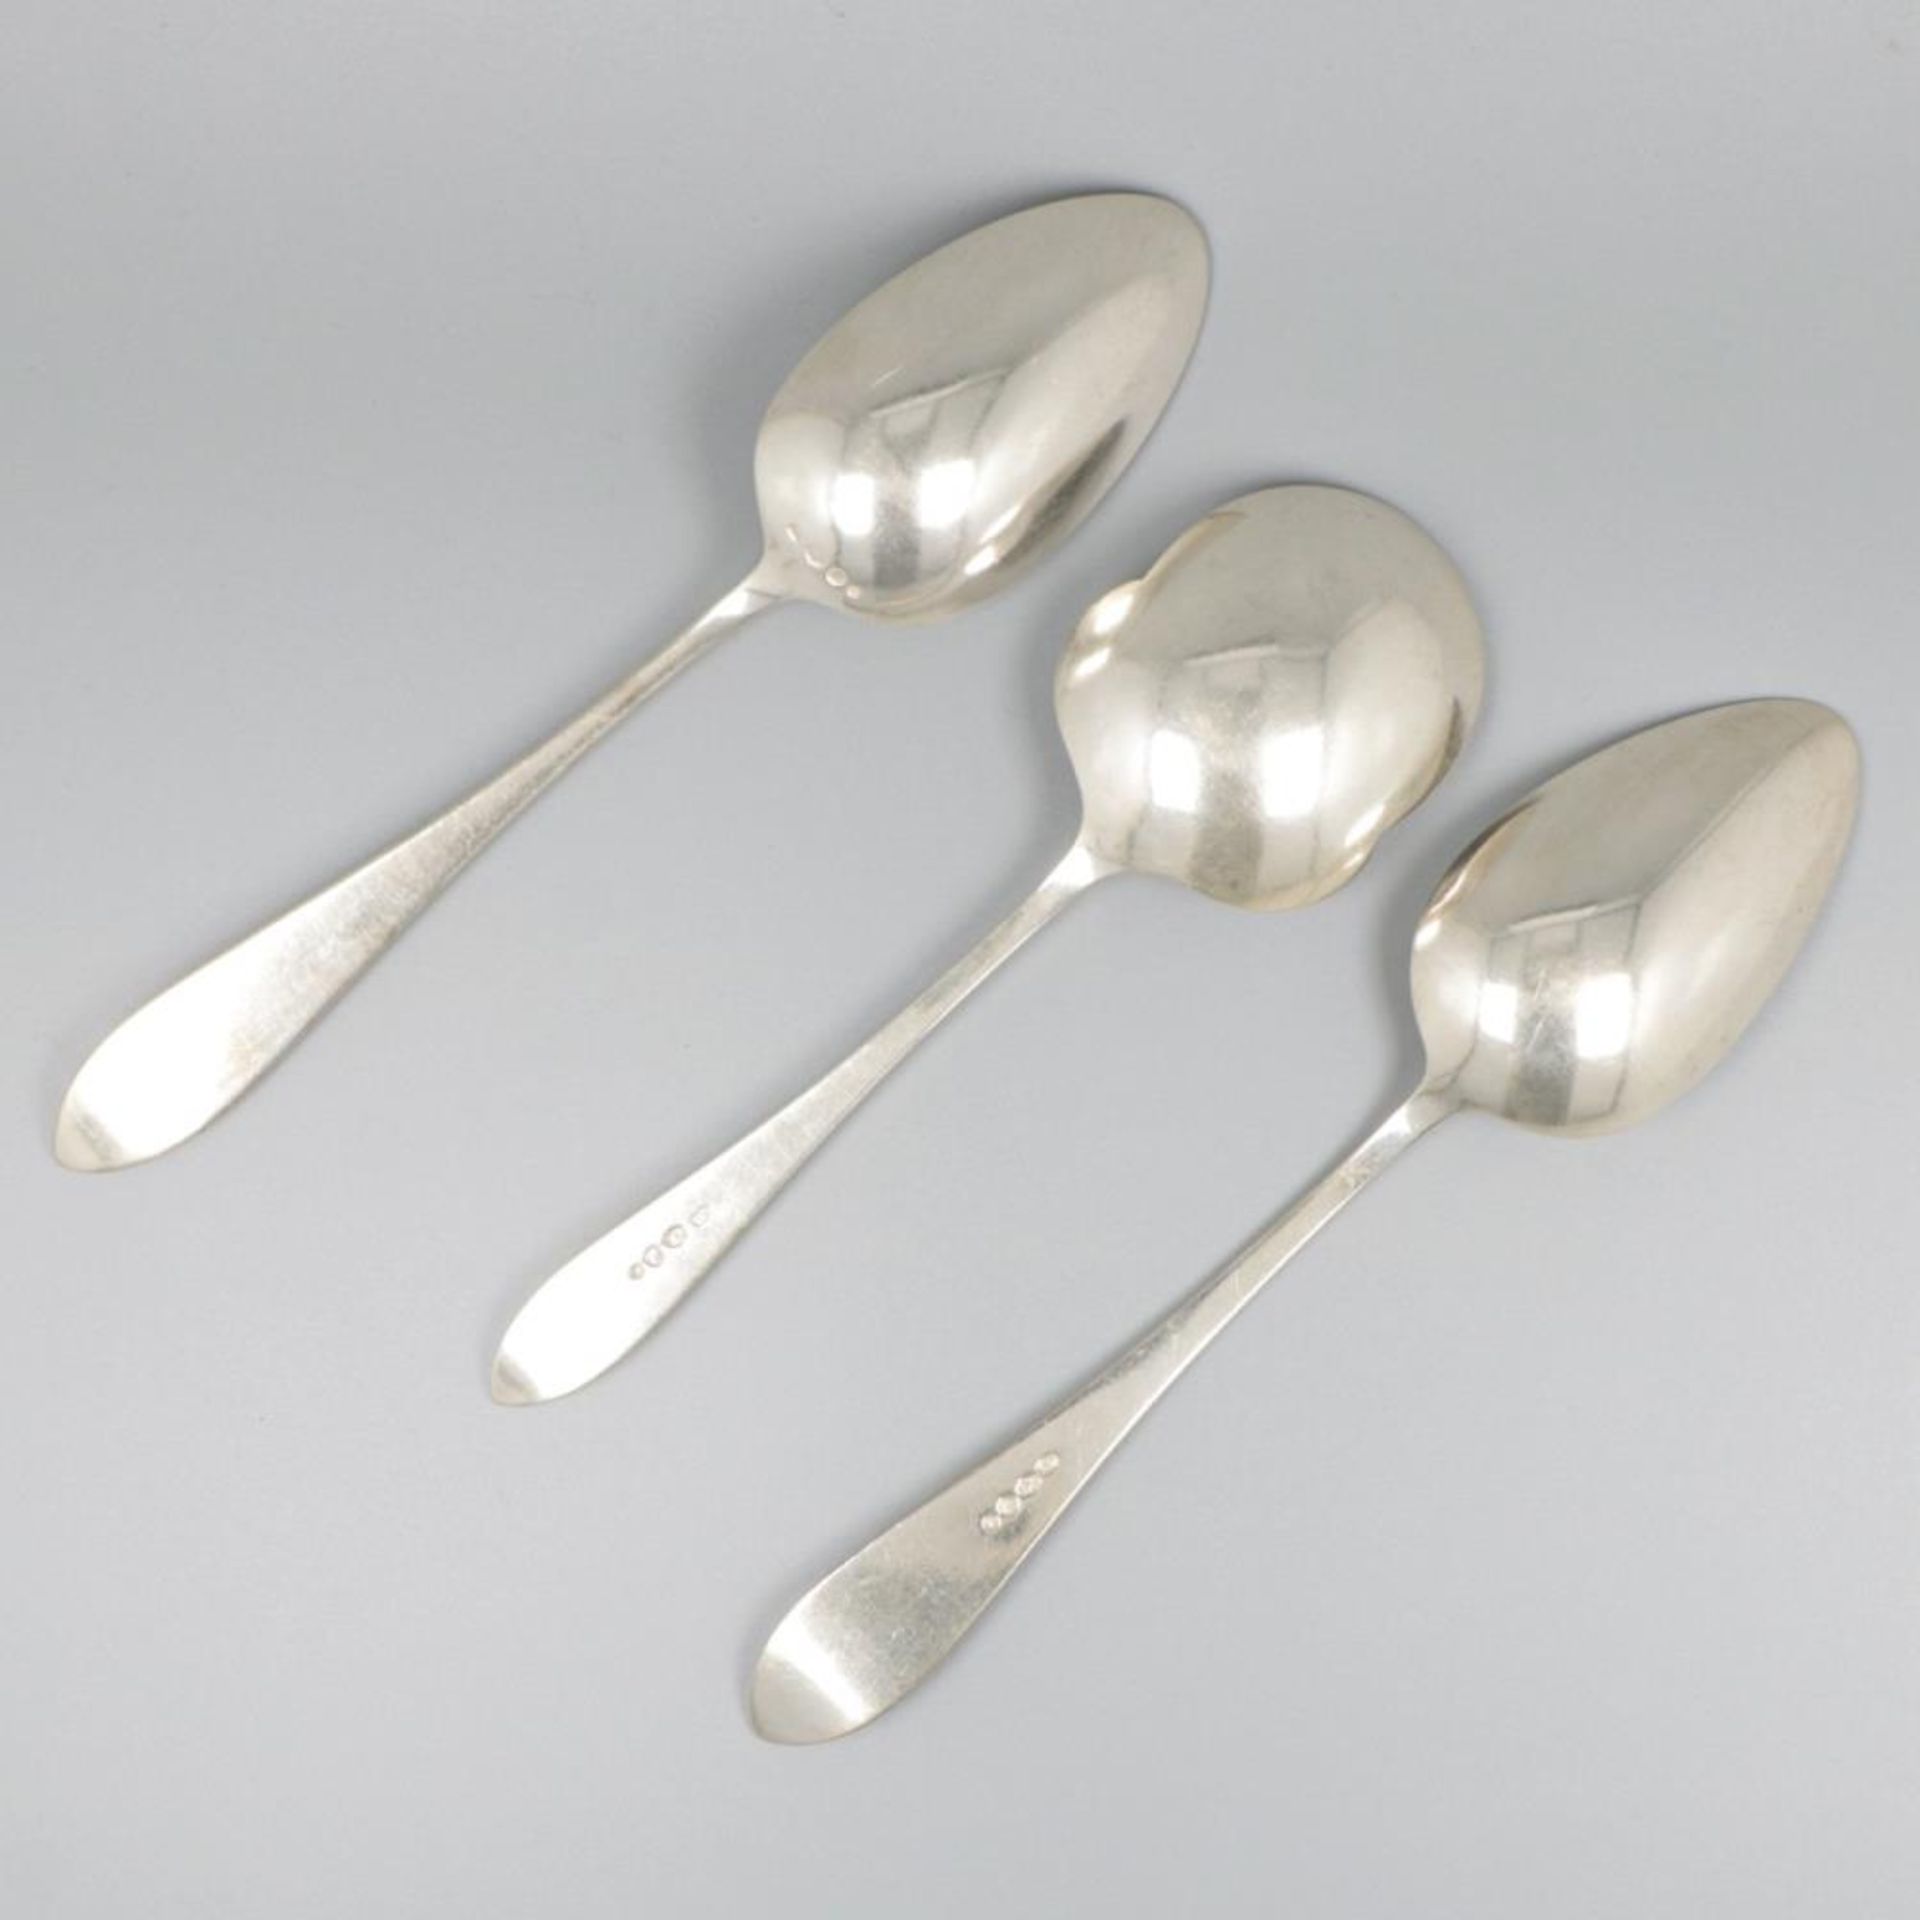 3-piece set of ladles "Hollands Puntfilet" silver. - Bild 2 aus 7